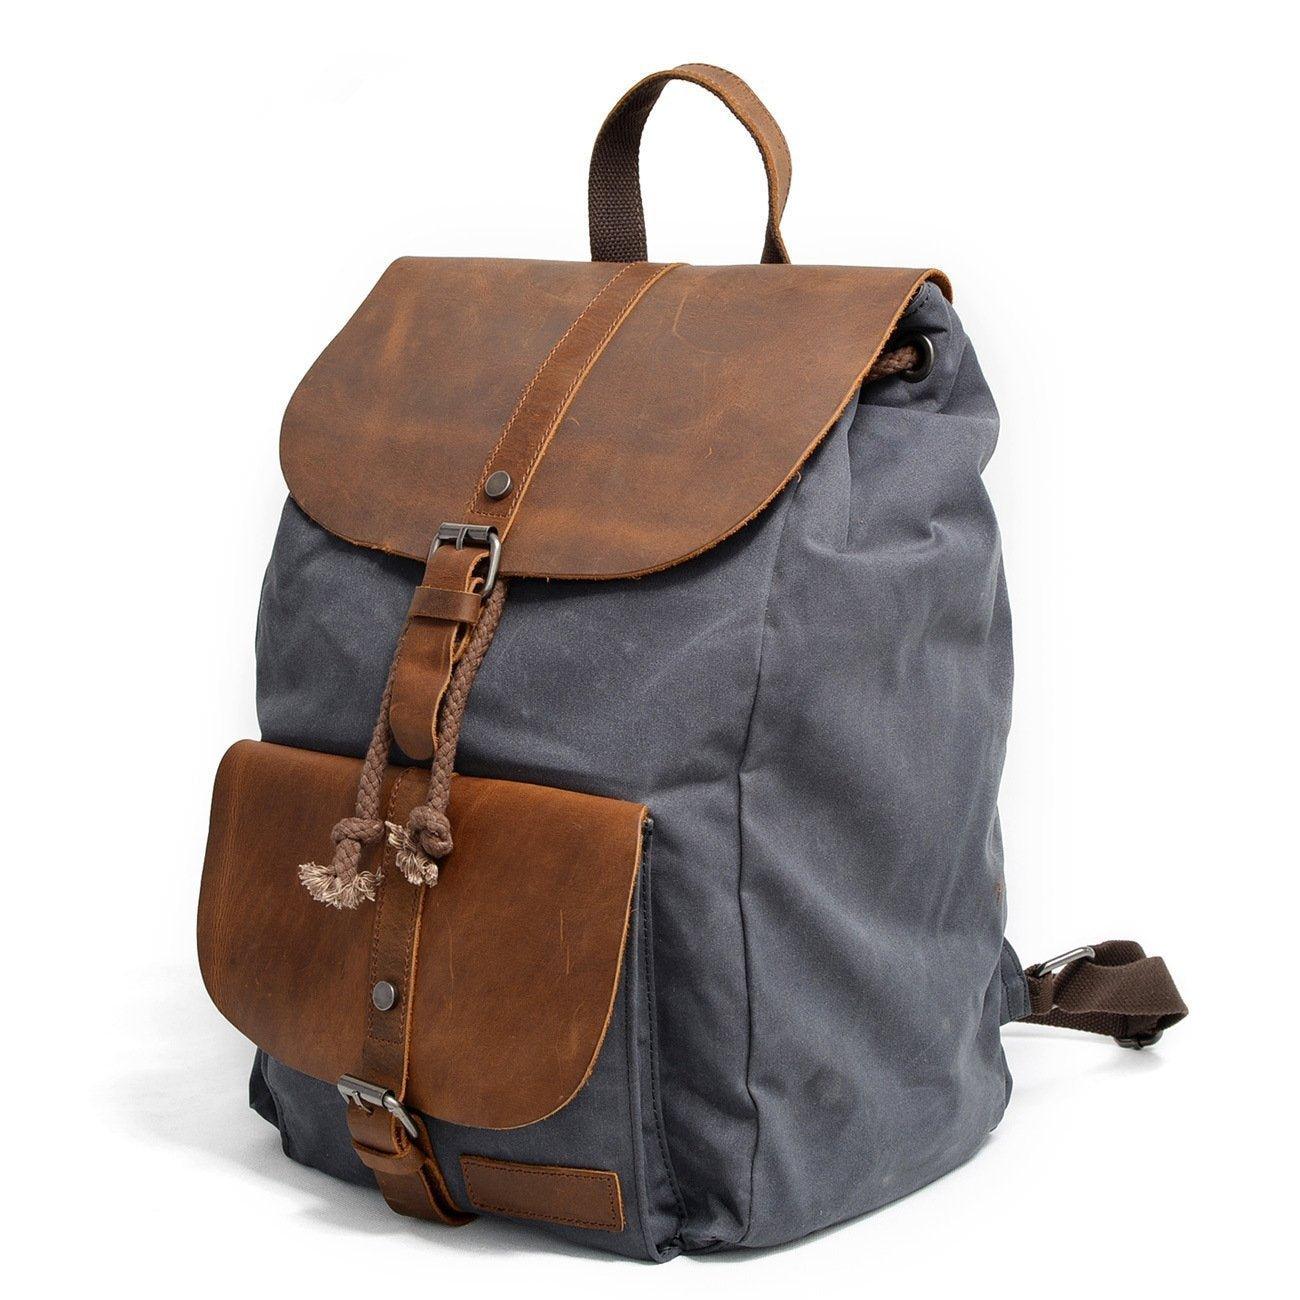 woosir waterproof canvas leather laptop backpacks casual travel daypackwoosir22263192 black 764852